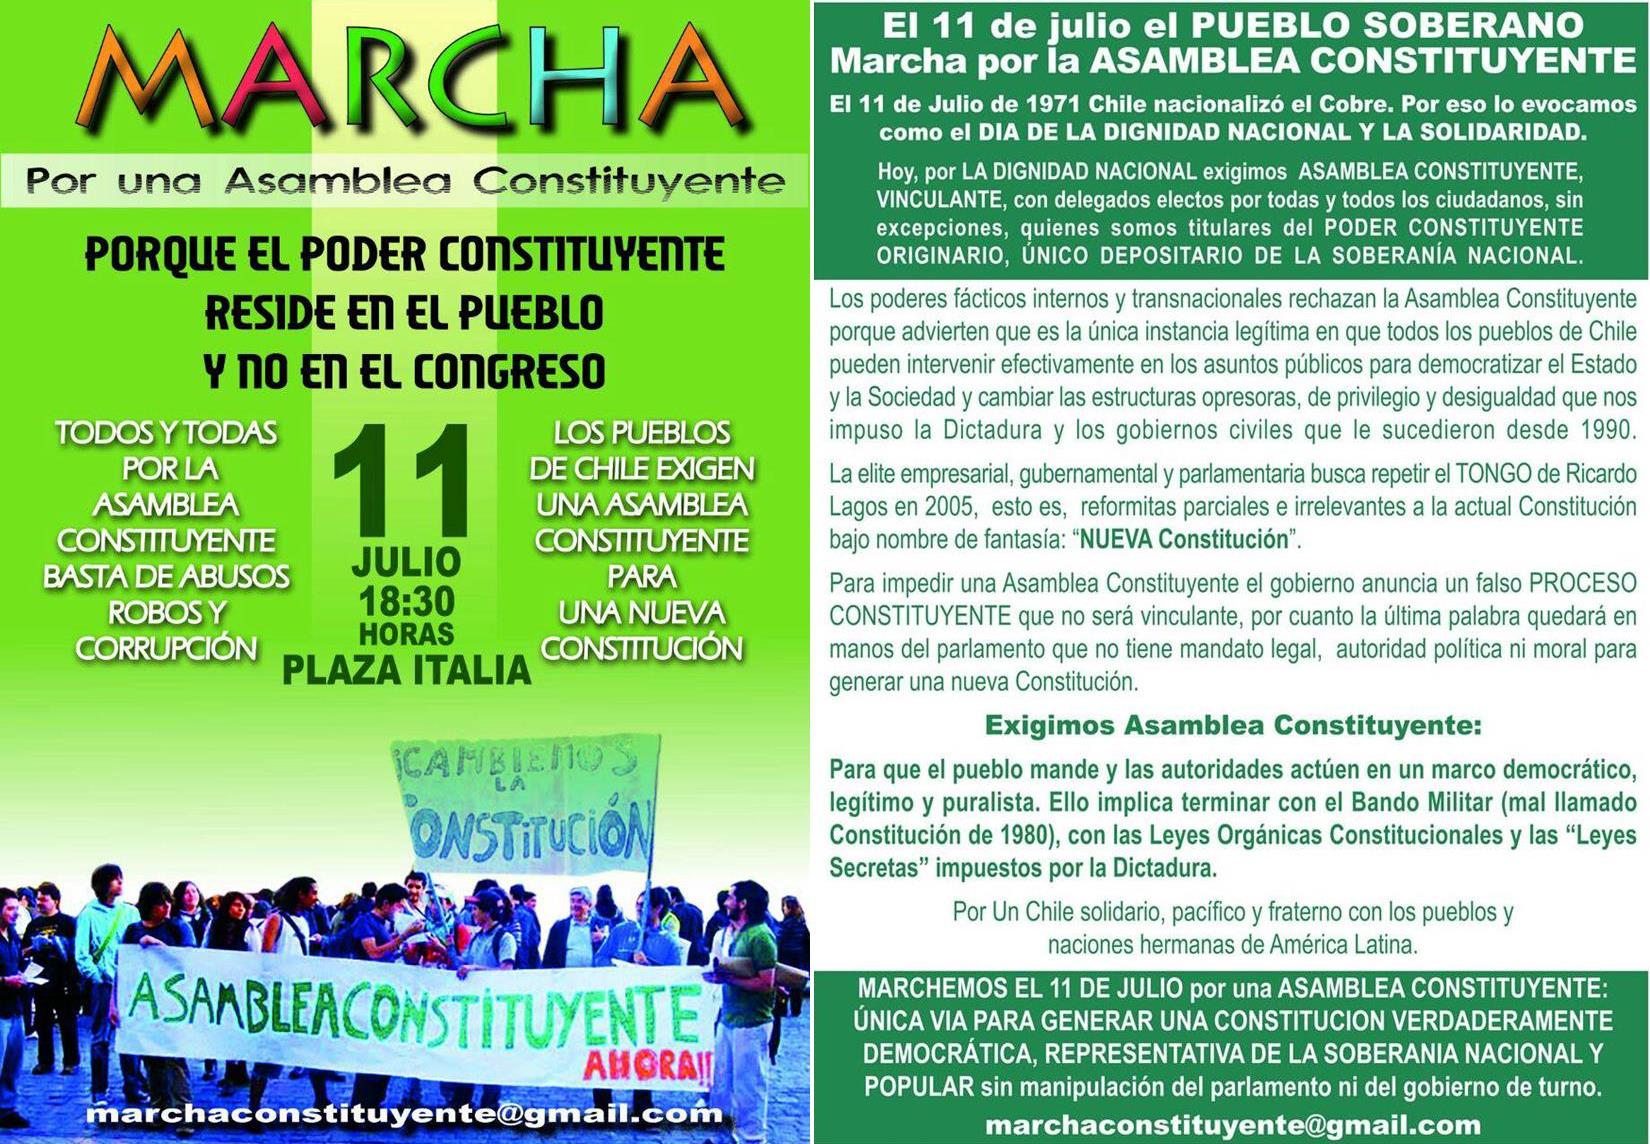 Organizaciones sociales convocan a marcha por la Asamblea Constituyente el 11 de julio